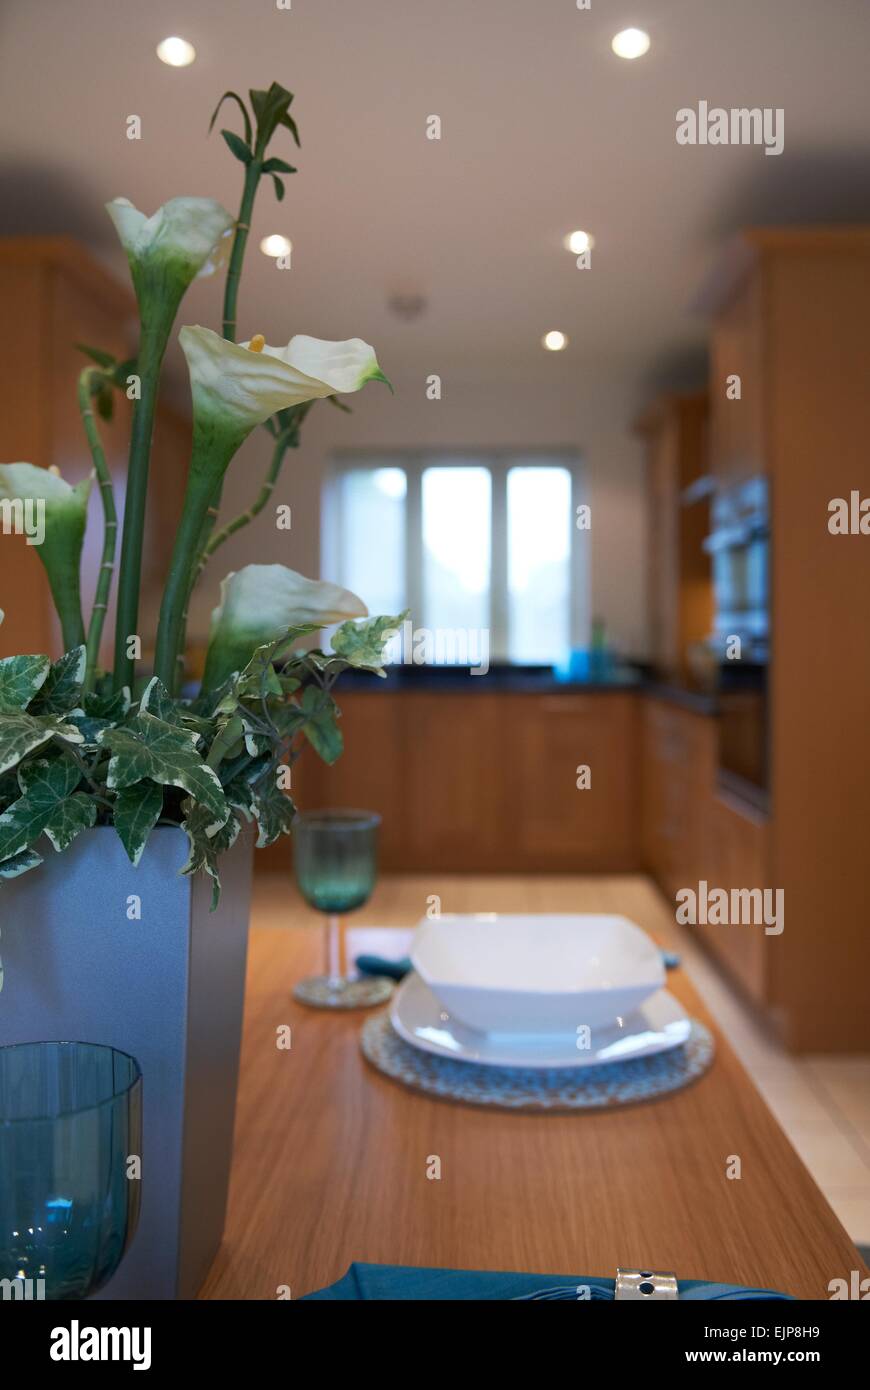 Tabelle der Wohnküche Küche Fenster Küche Einheiten Galeere jade Teal grüne Servietten Becher Gedeck Platte Schale Vase Glashaus Stockfoto